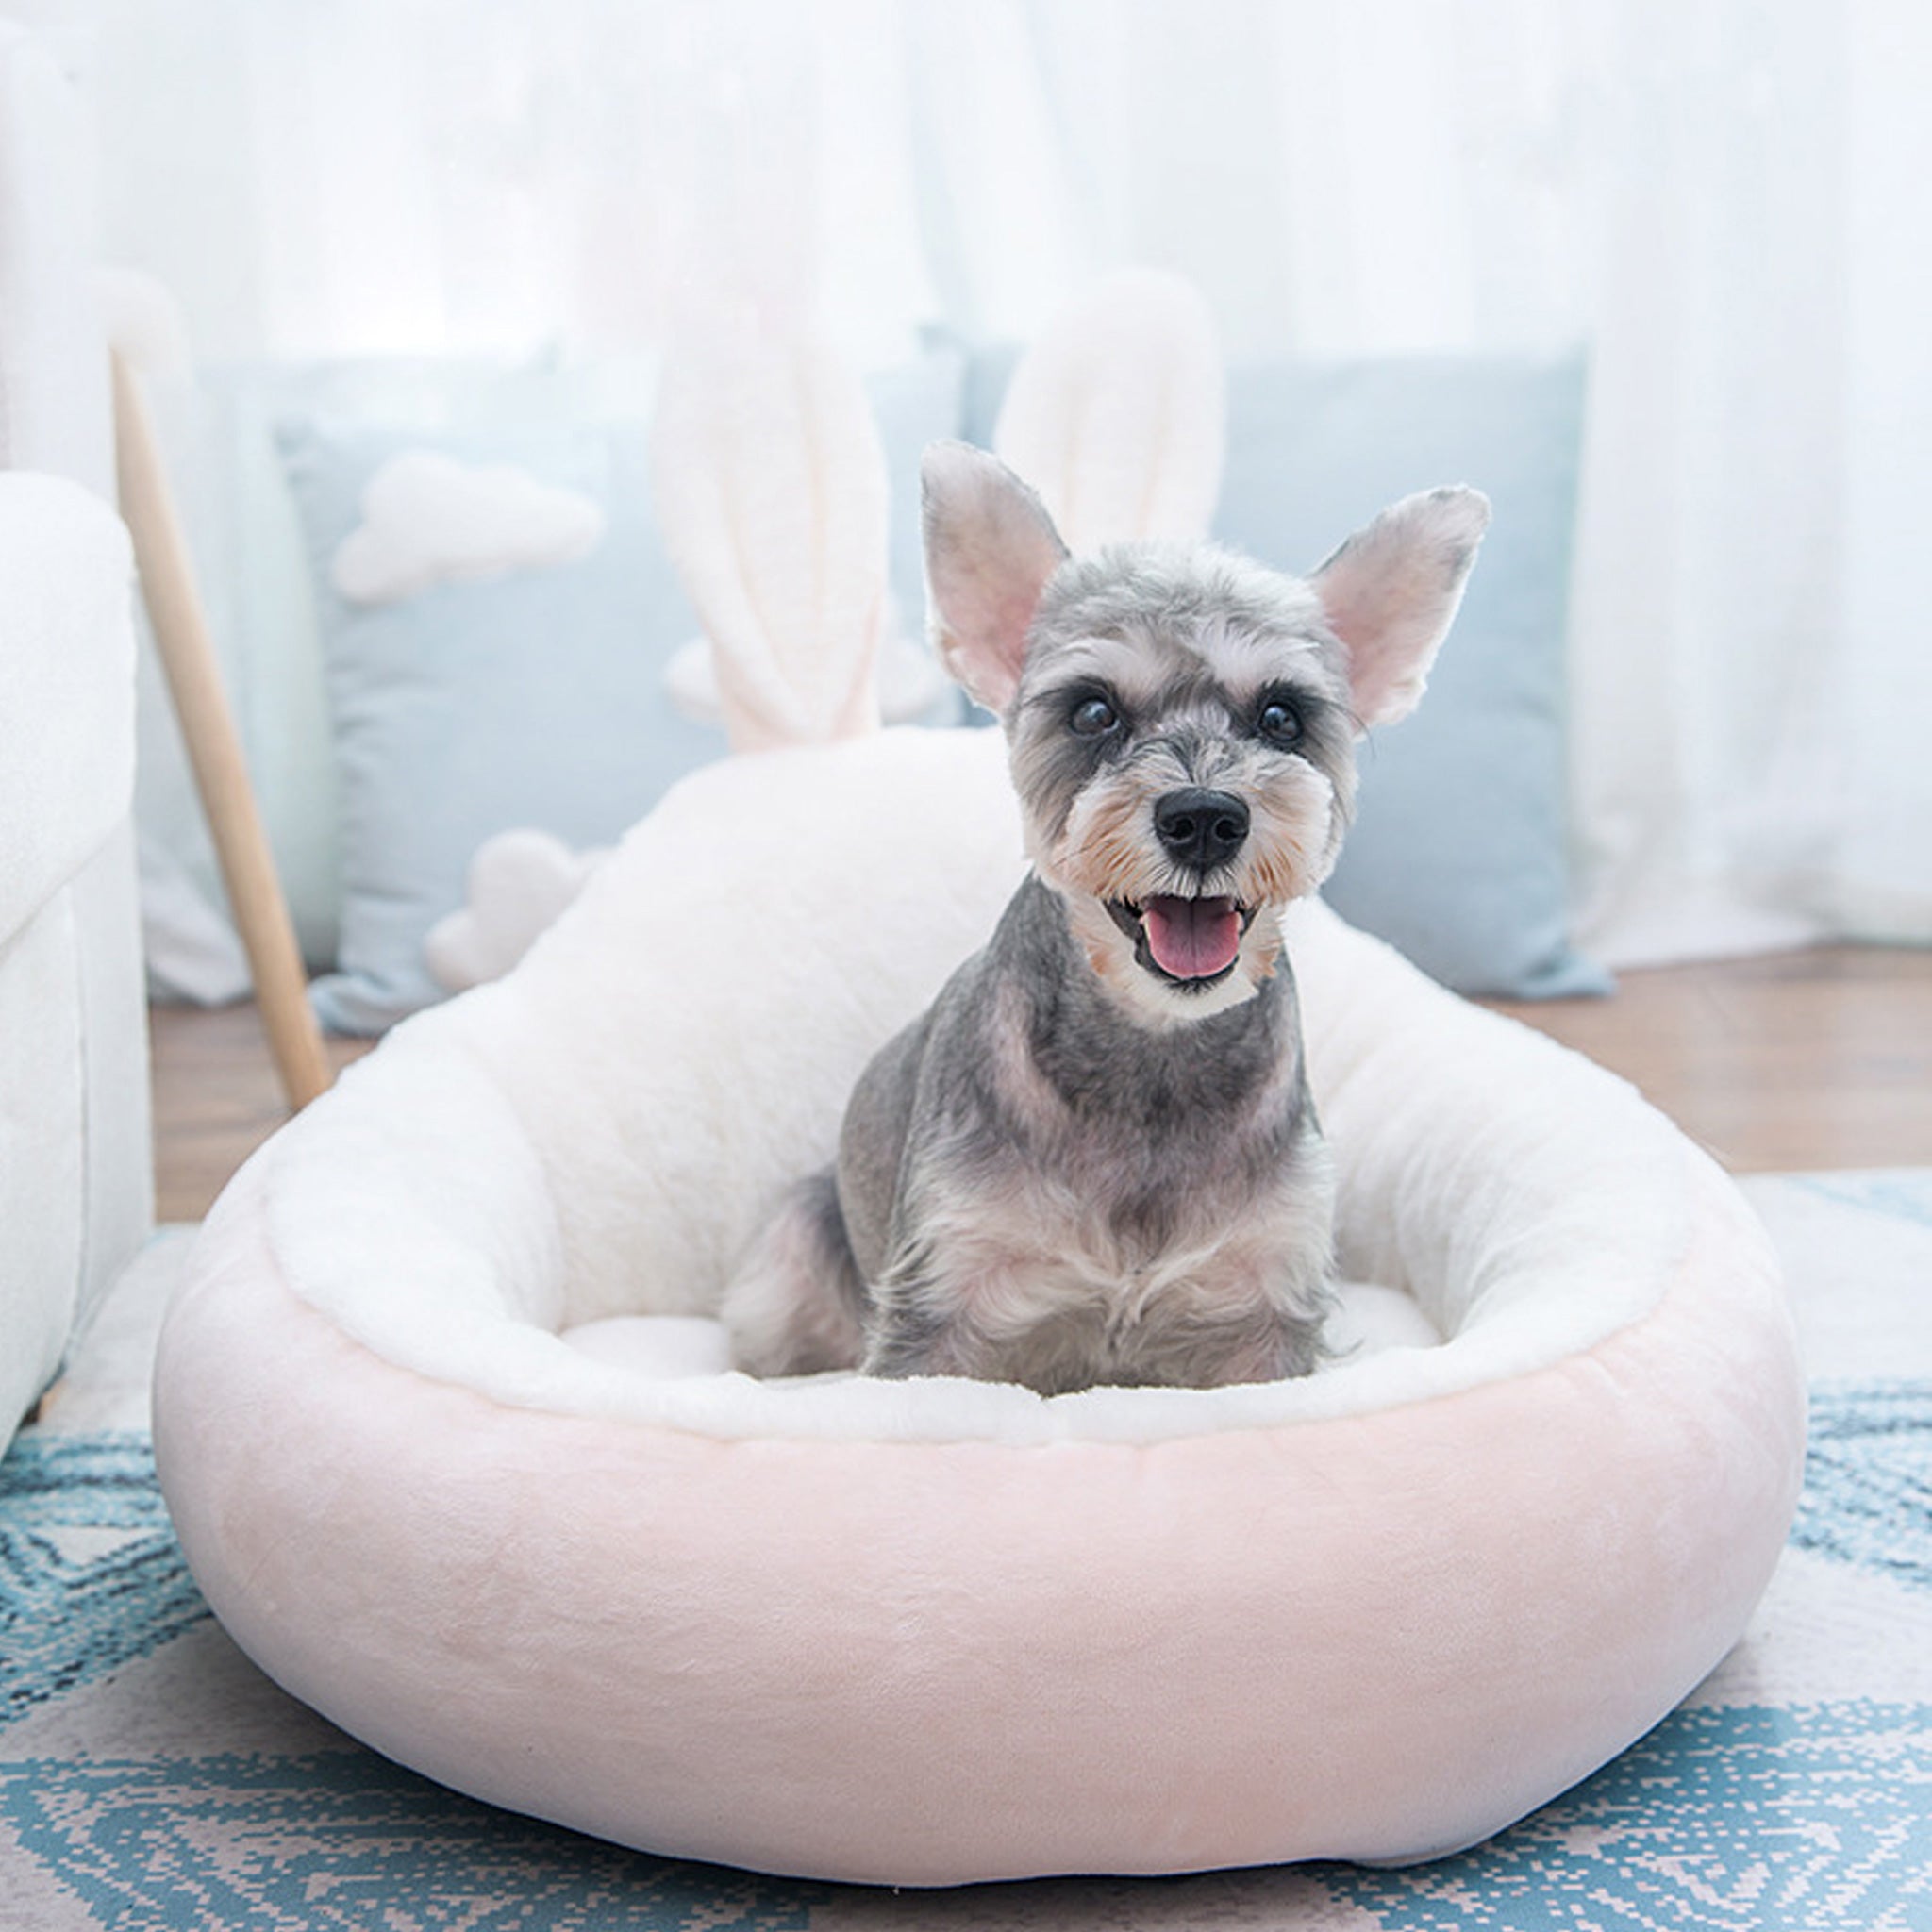 Siv pes veselo sedi v roza pasji postelji